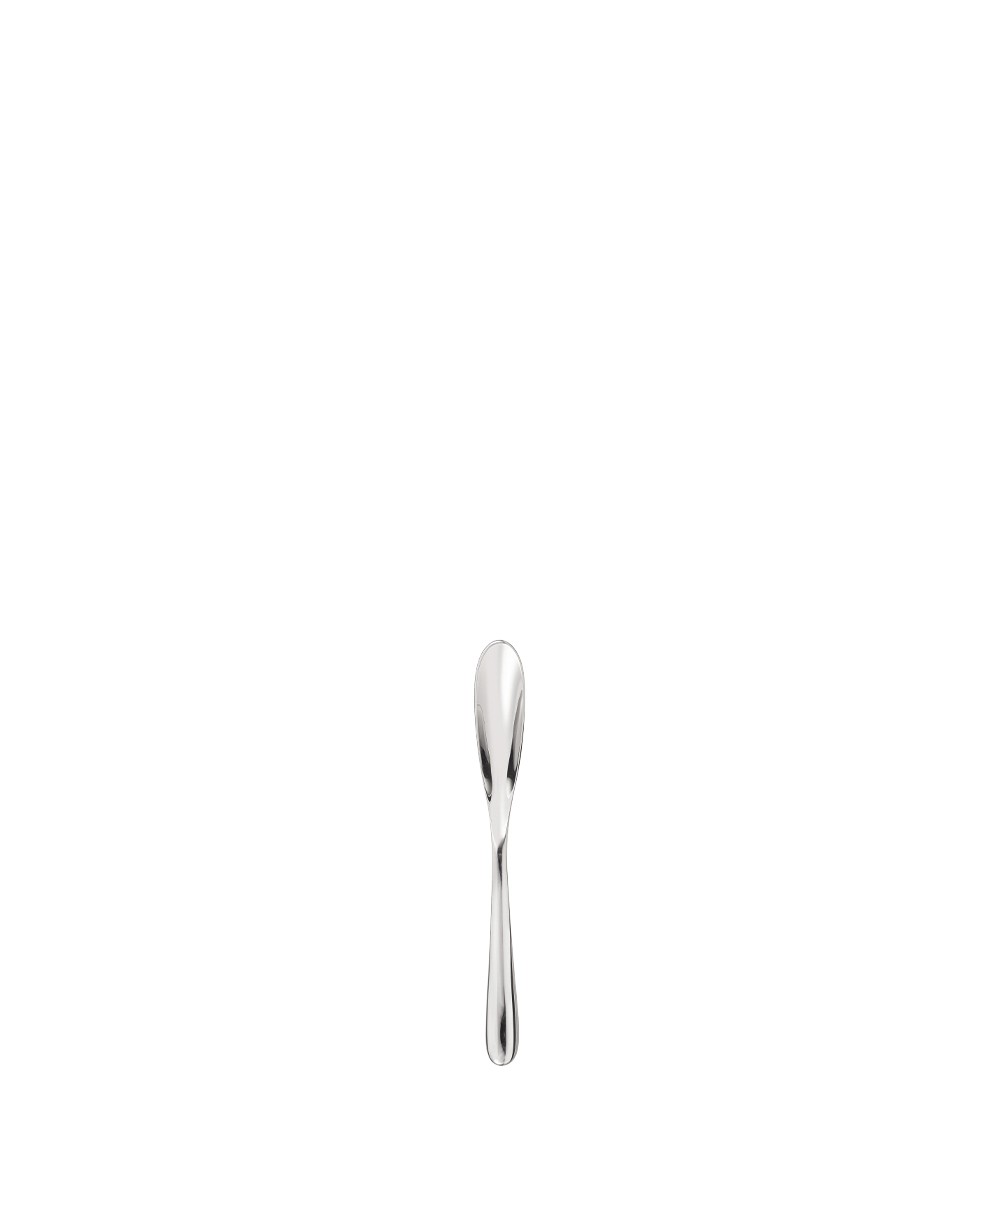 Hier abgebildet der Espressolöffel in silber der Serie L'ame by Christofle Collection - RAUM concept store